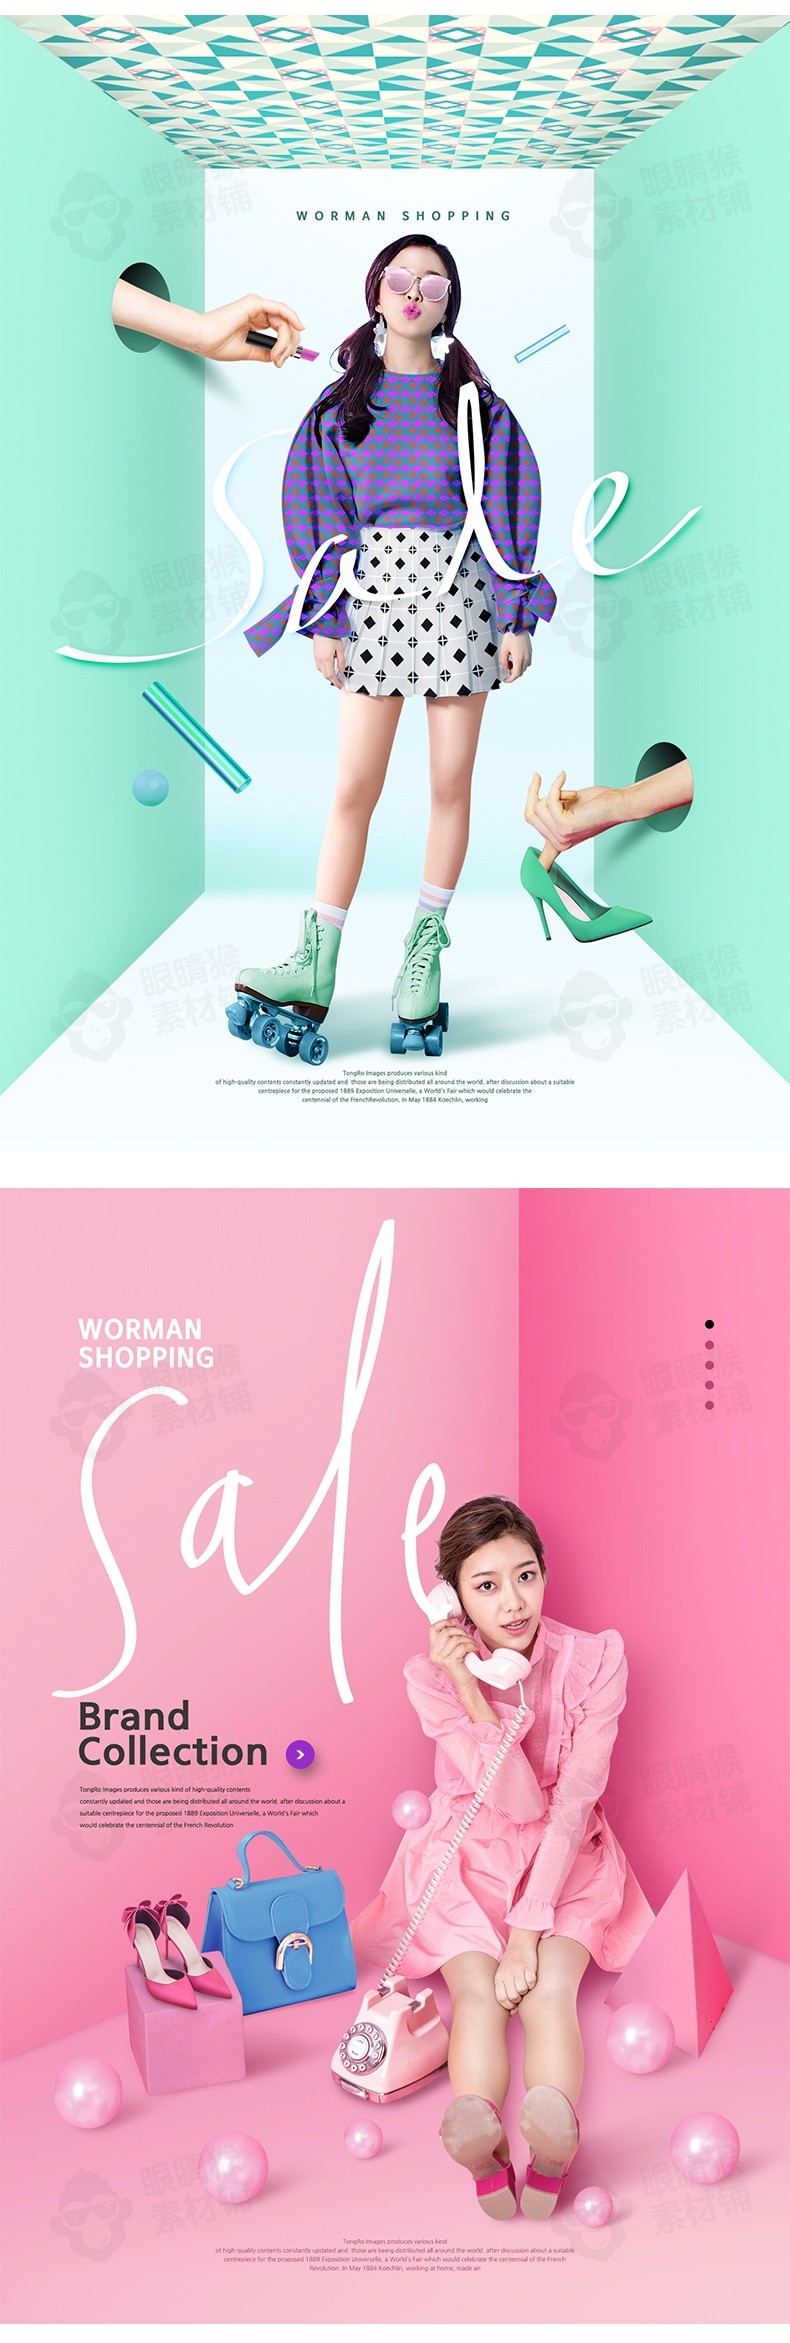 9张女性购物活动电商海报PSD素材-海报素材-到位啦UI